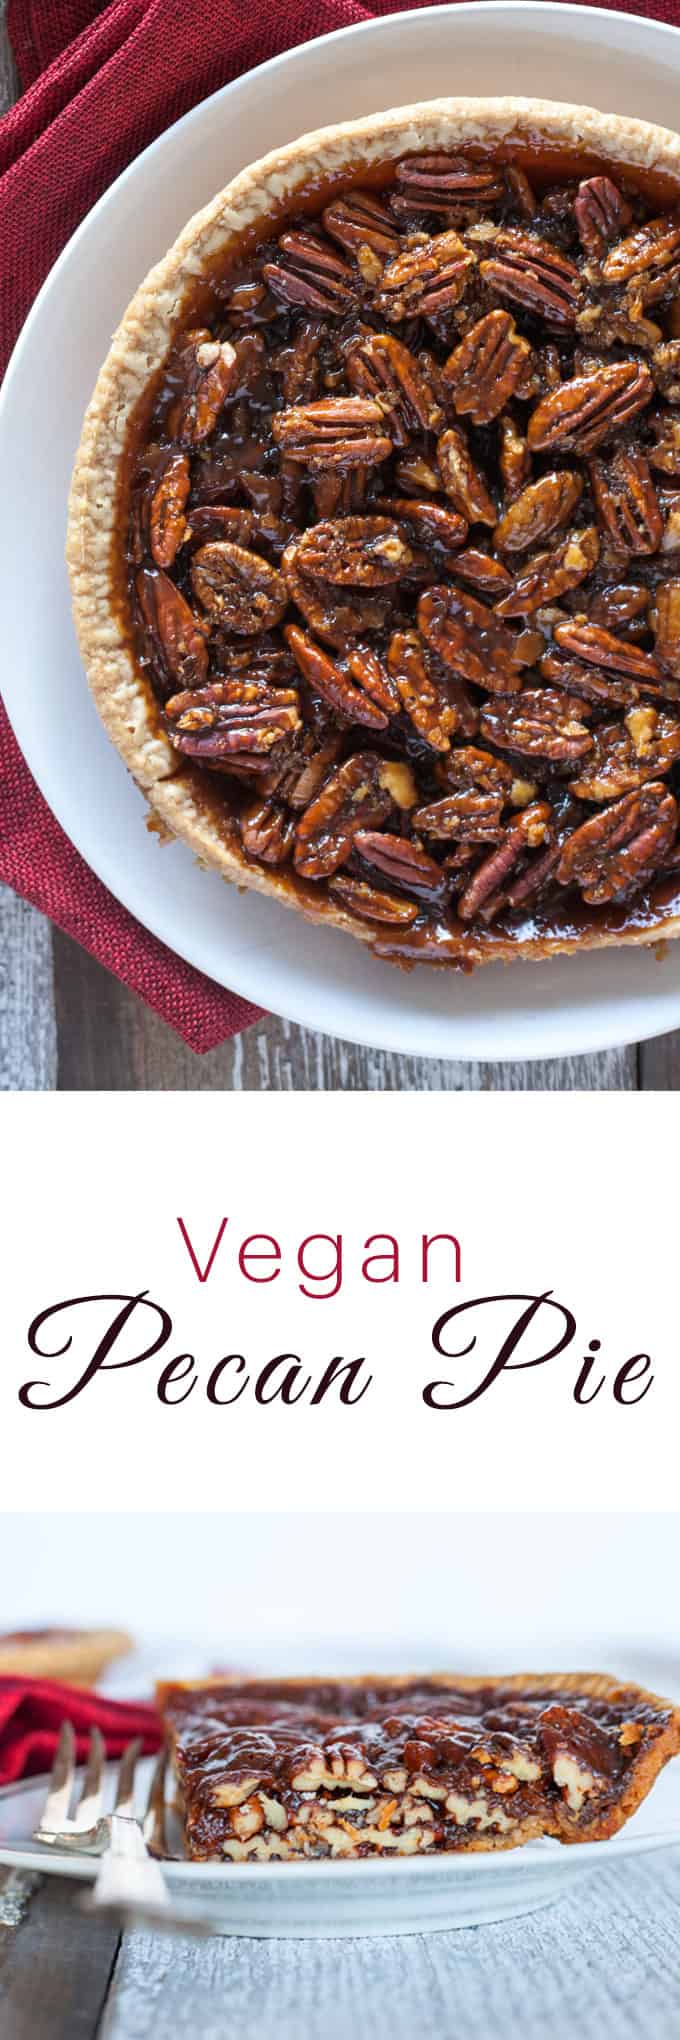 Vegan Pecan Pie Recipe